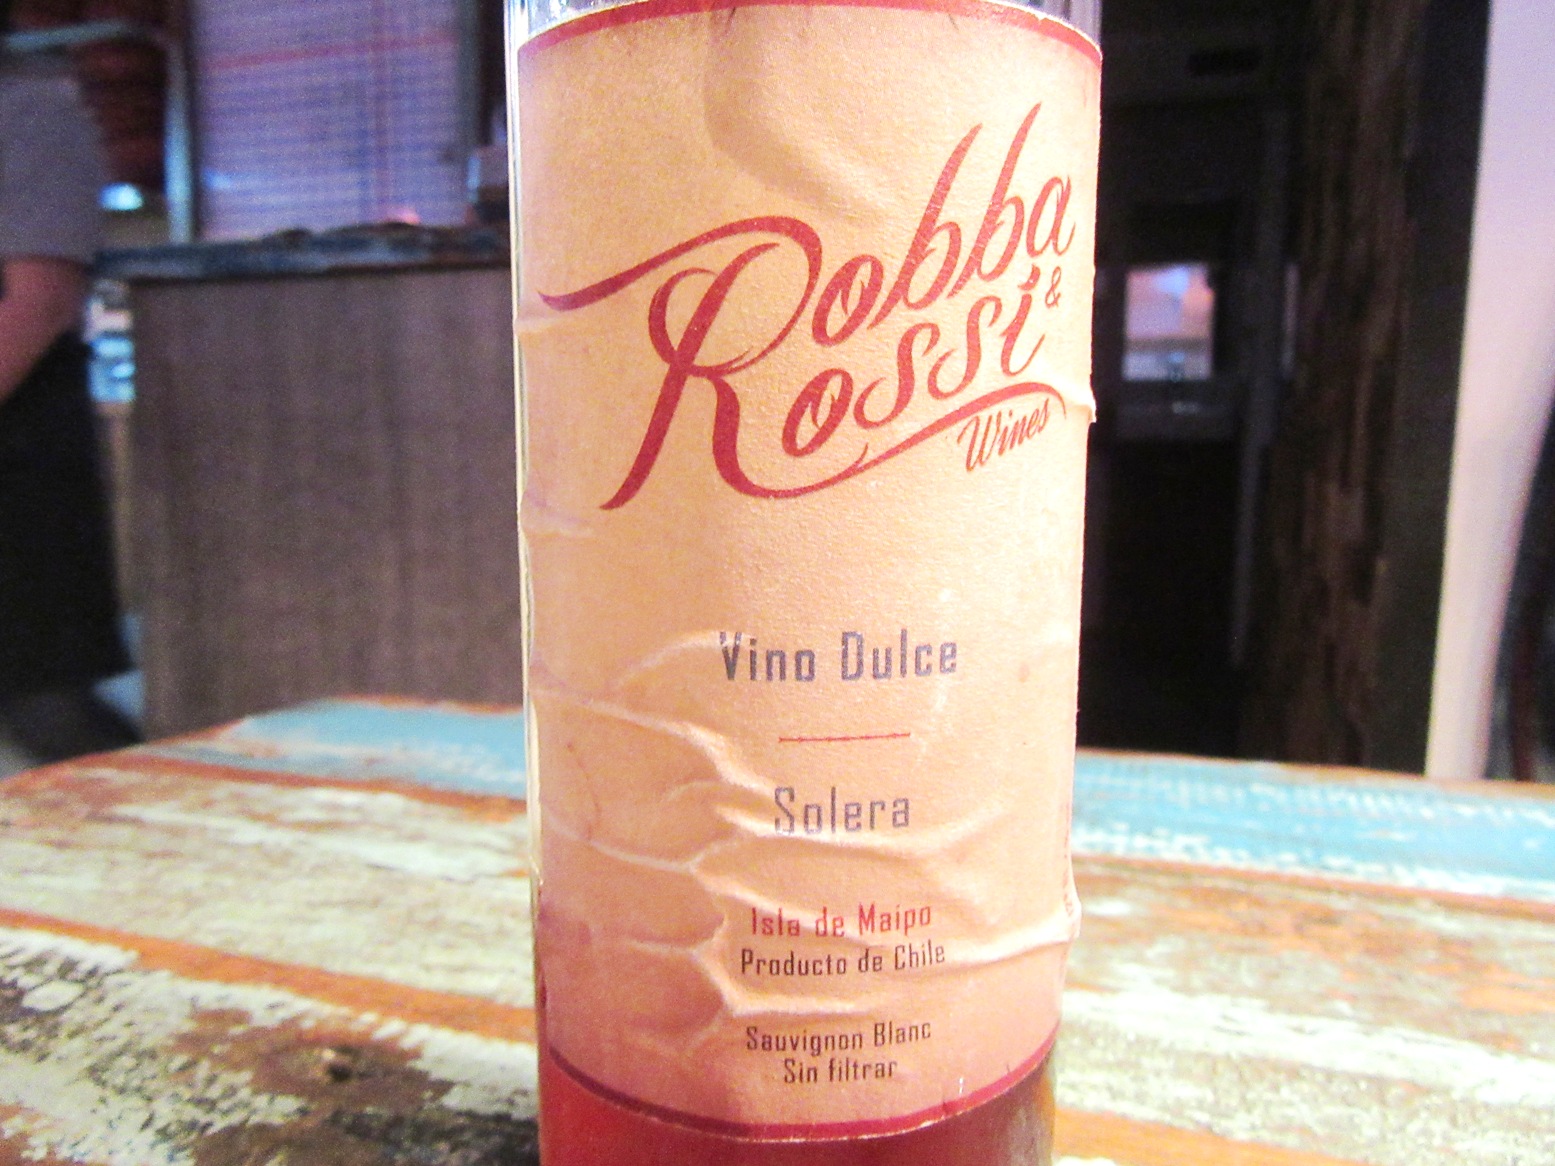 Robba & Rossi Wines, Vino Dulce, Solera Sauvignon Blanc, Isla de Maipo, Chile, Wine Casual